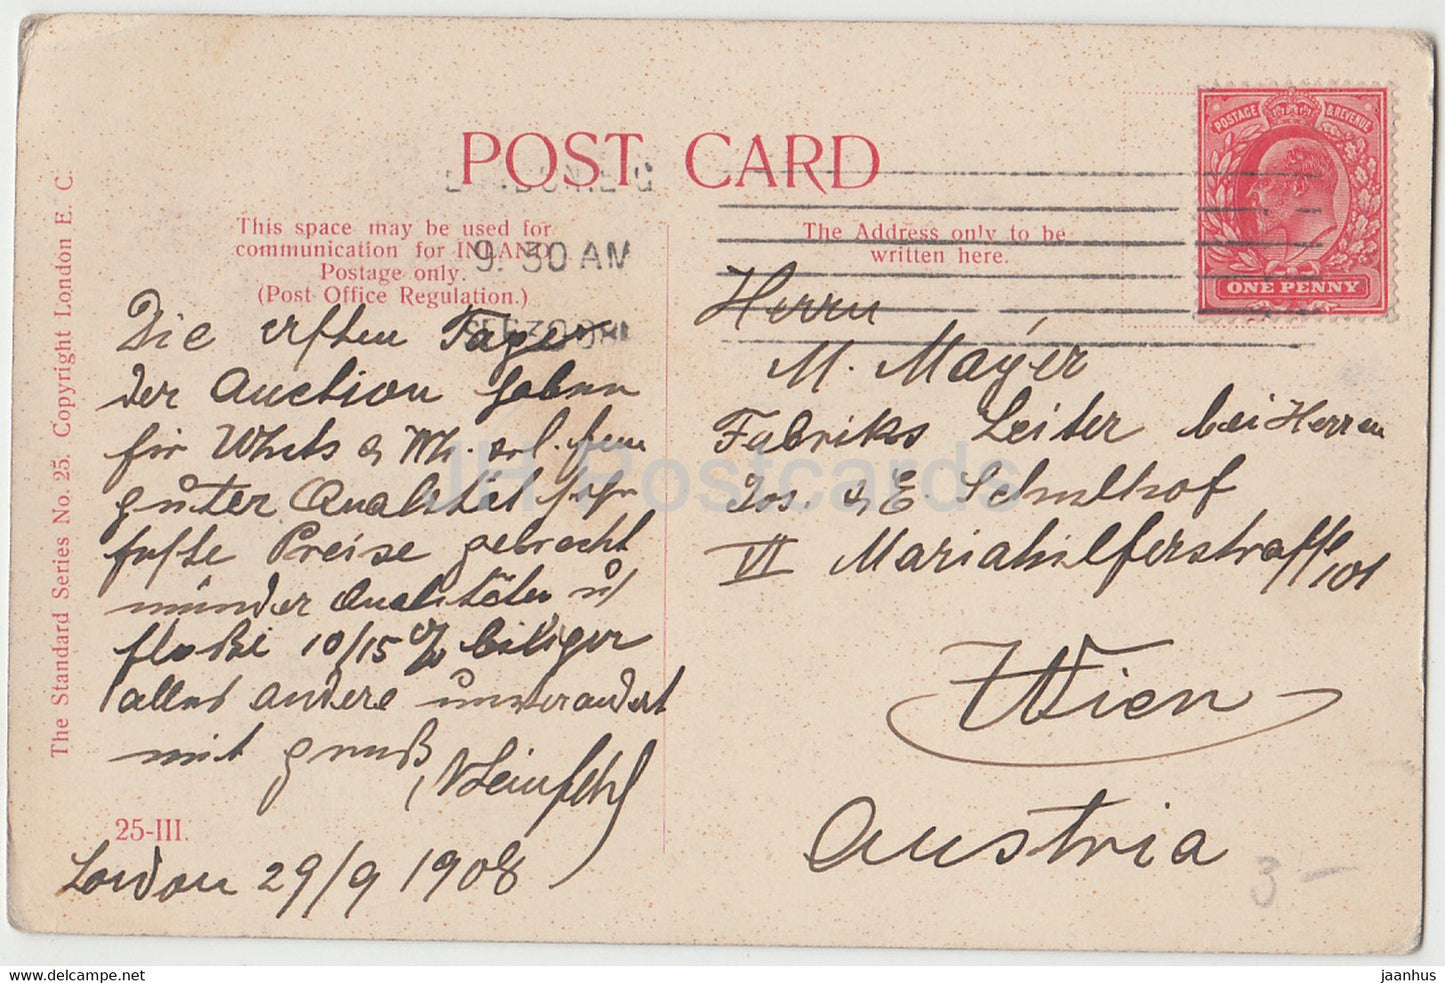 Paar – Frau und Mann – 25 III – alte Postkarte – 1908 – Vereinigtes Königreich – gebraucht